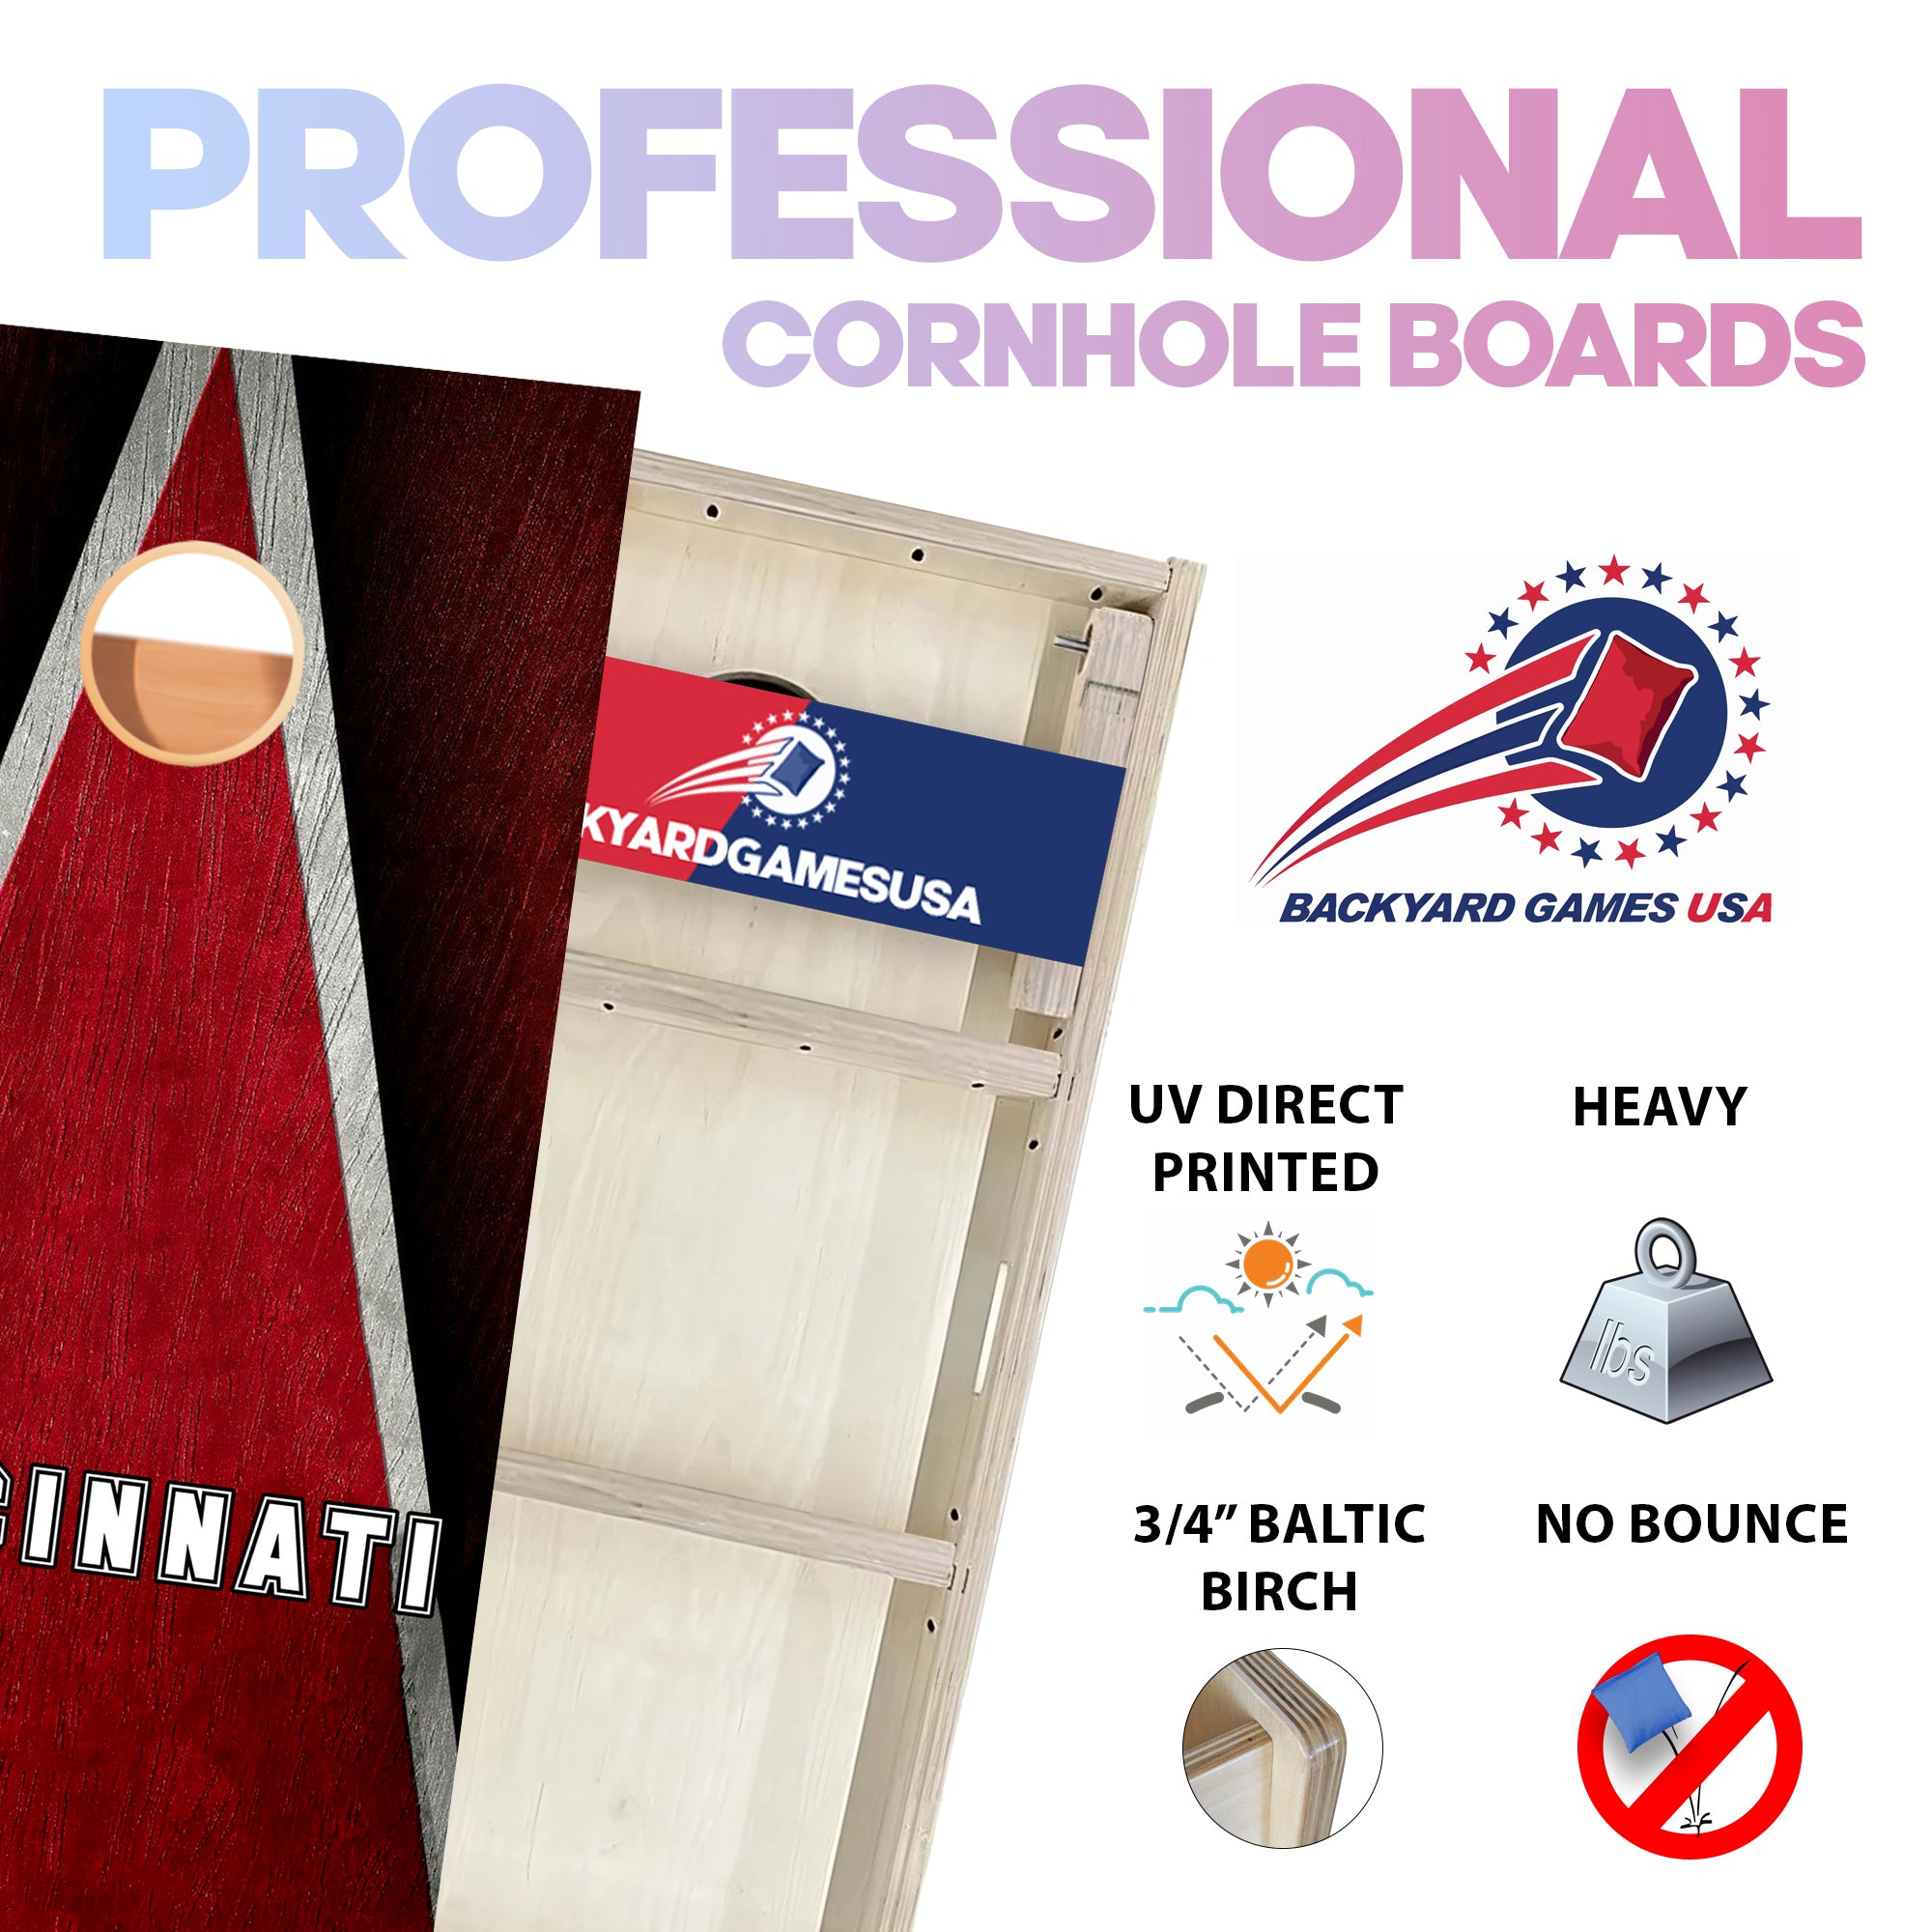 Cincinnati Professional Cornhole Boards